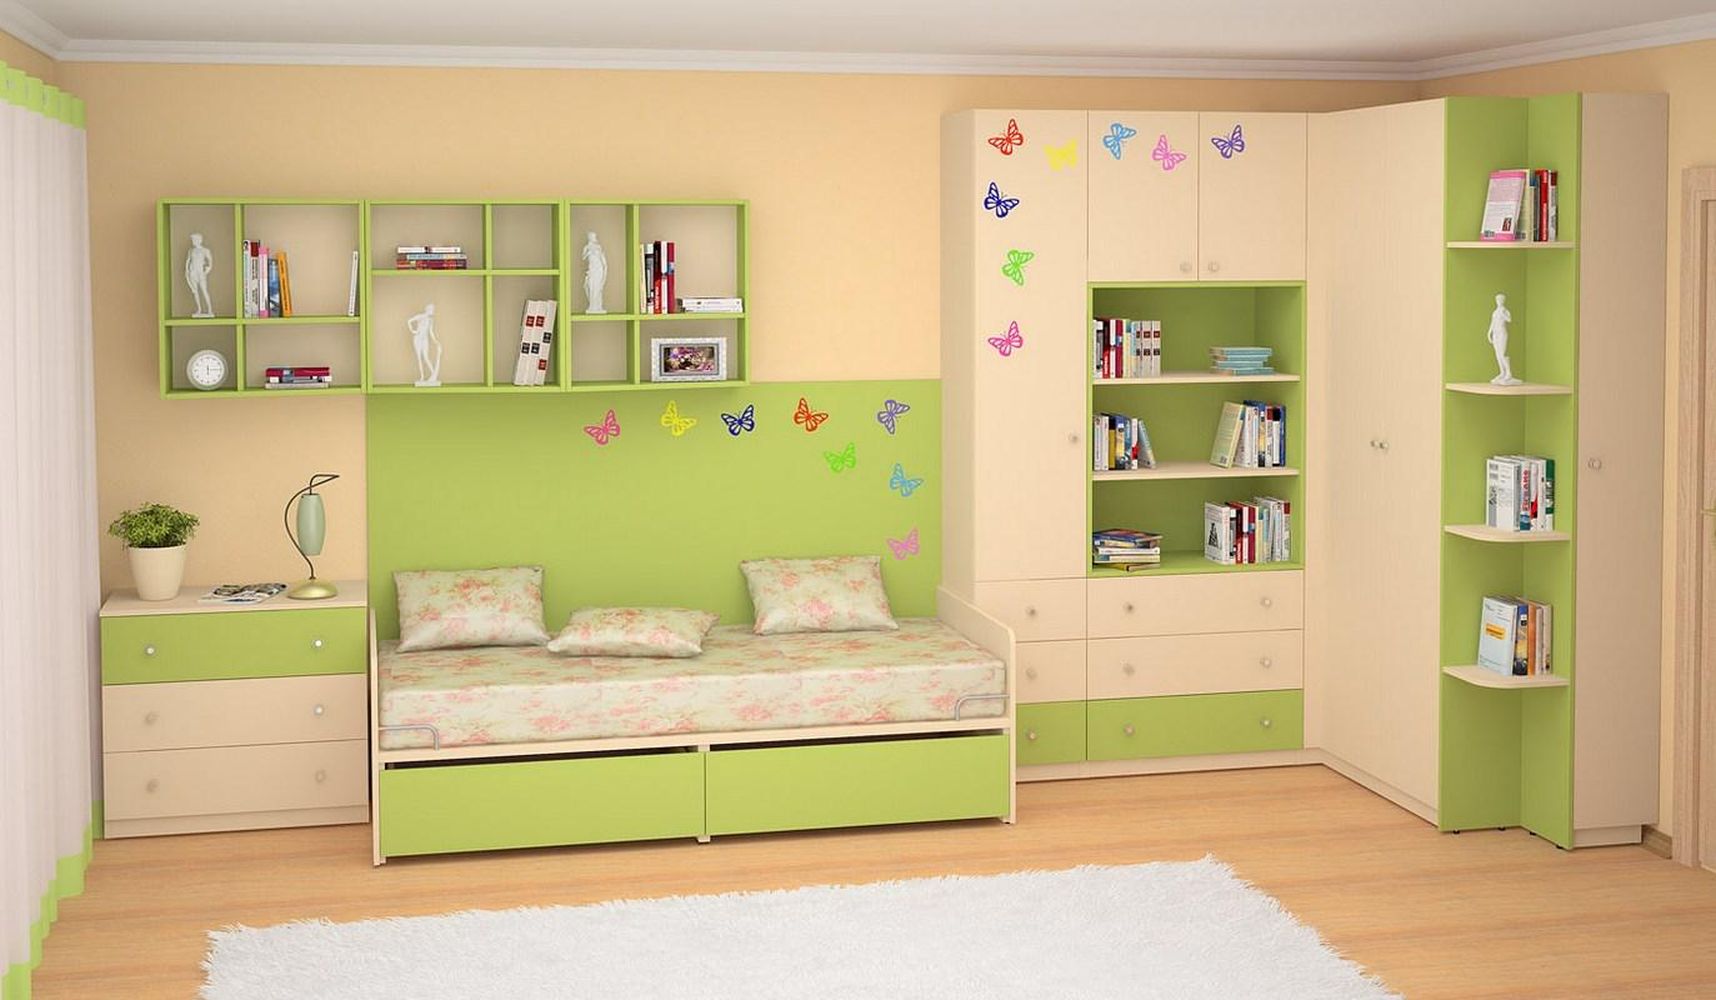 Детская мебель mosmirmebeli gmail com. Мебель в детскую комнату. Детские комнаты мебель. Мебель для детских комнат. Детская корпусная мебель.